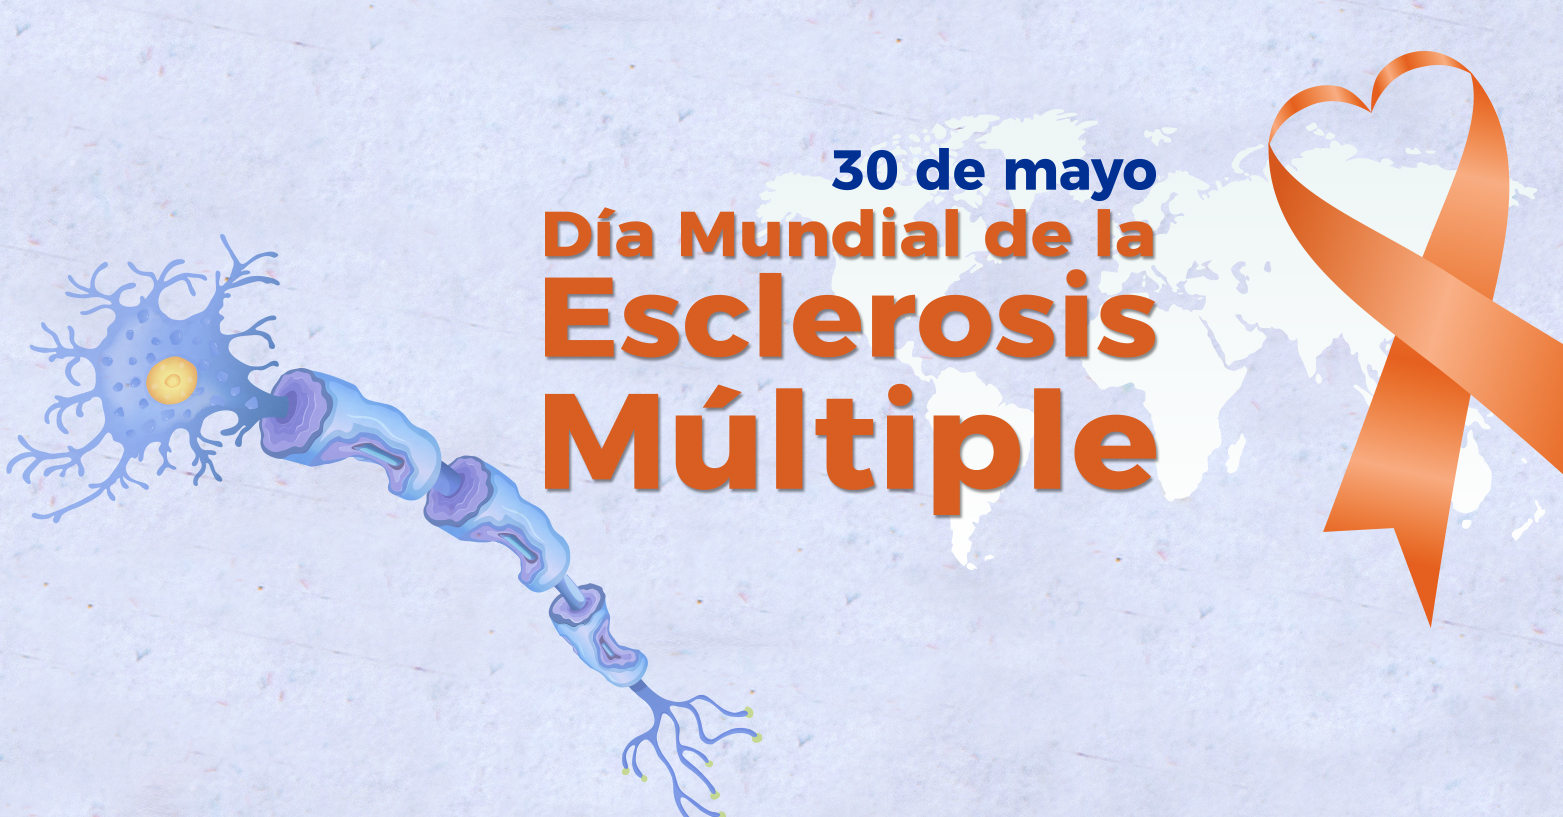 Día Mundial de la Esclerosis Múltiple | 30 de mayo